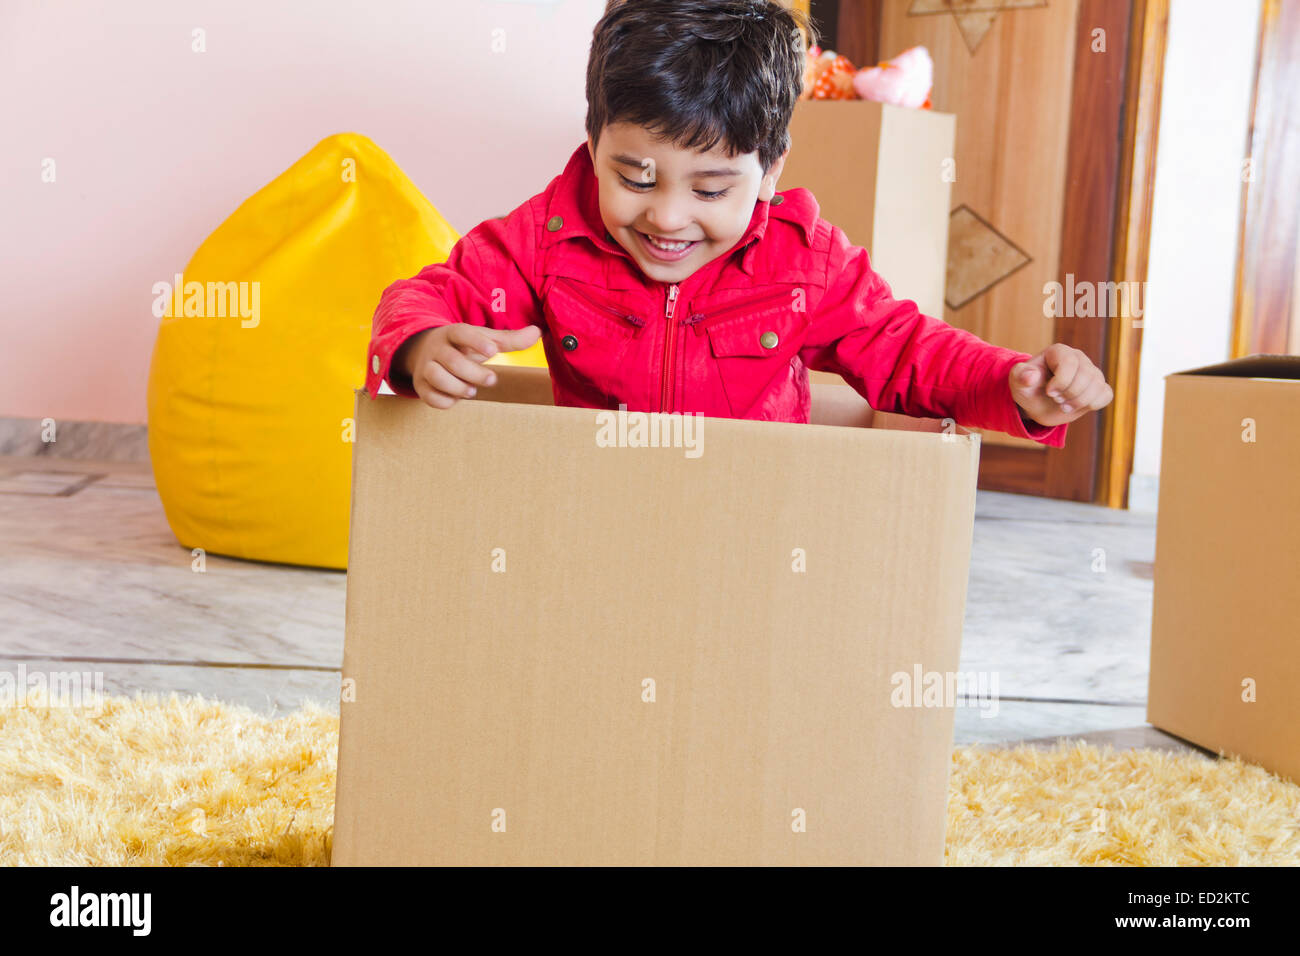 1 indian child boy home fun Carton box Stock Photo